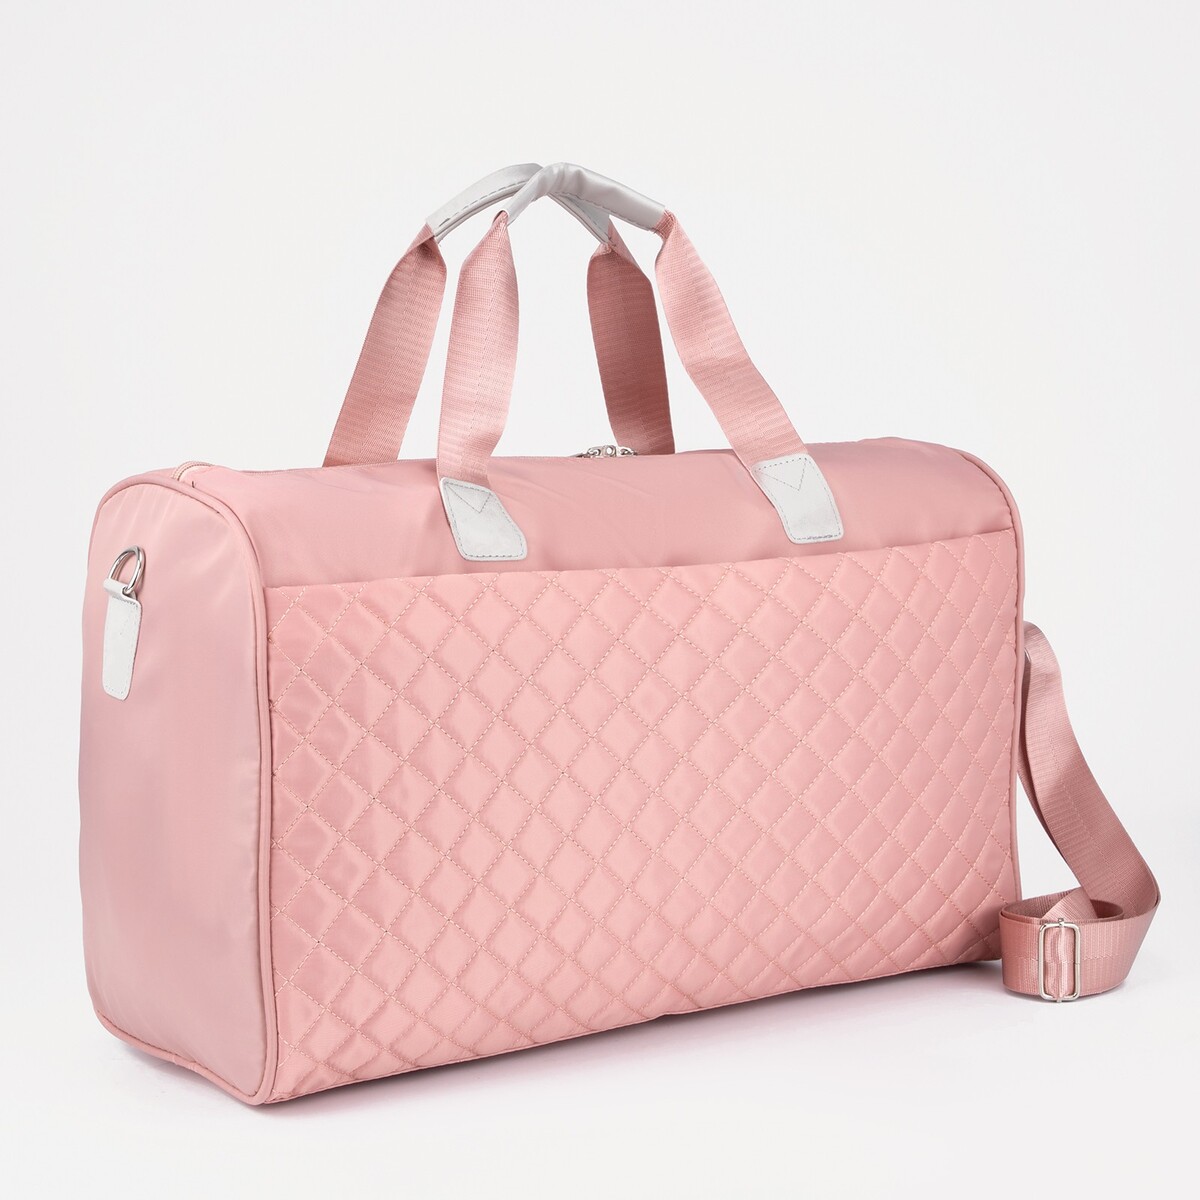 Сумка дорожная на молнии, наружный карман, длинный ремень, держатель для чемодана, цвет розовый сумка дорожная складная отдел на молнии держатель для чемодана наружный карман розовый